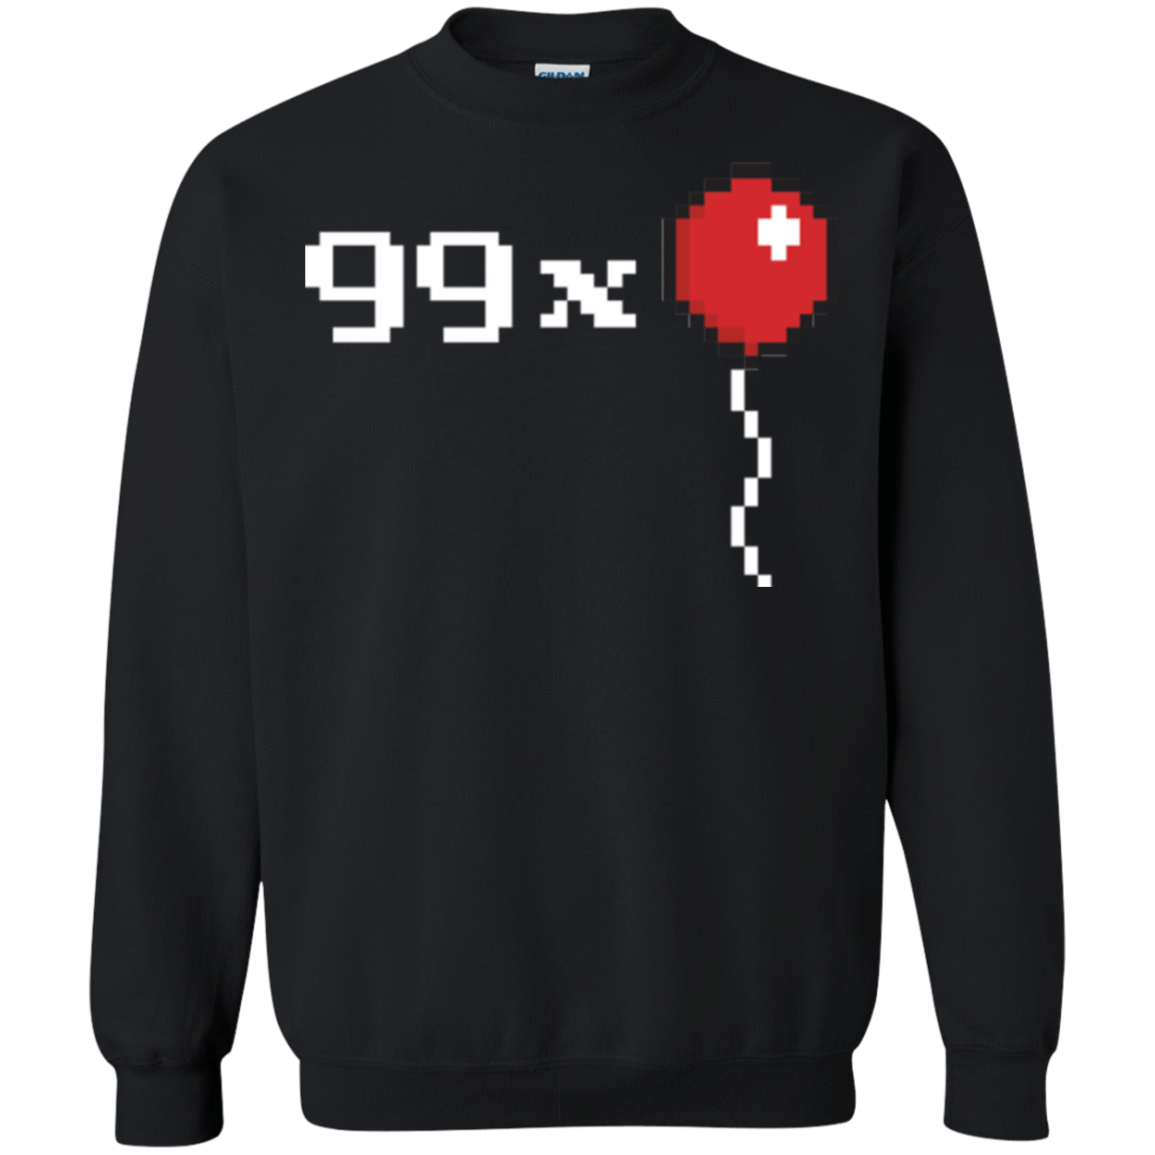 Sweatshirts Black / Small 99x Balloon Crewneck Sweatshirt